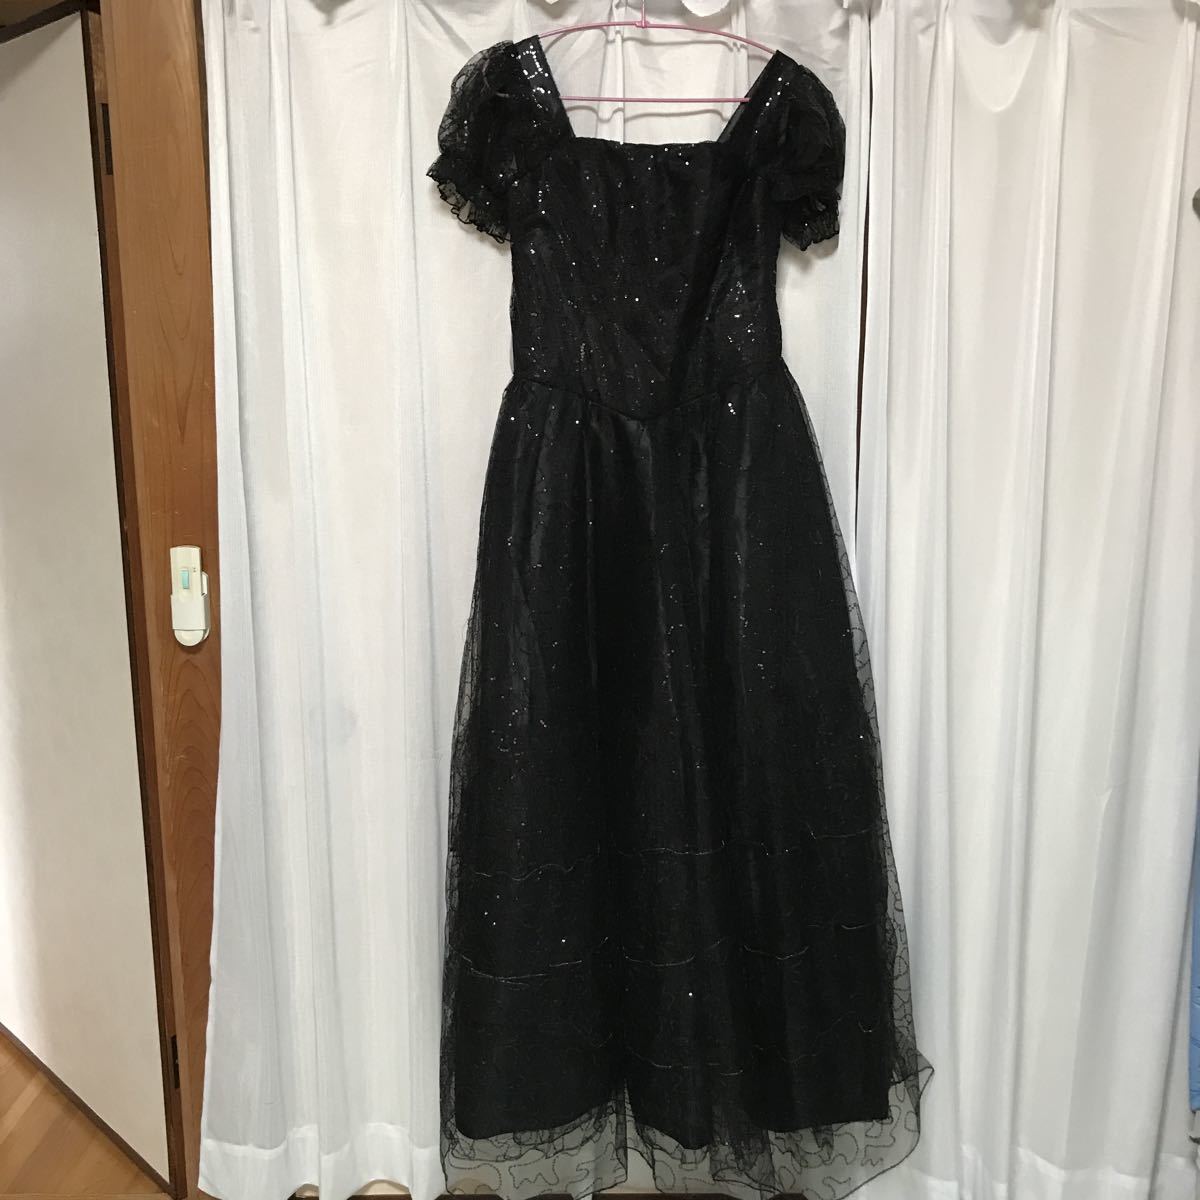  чёрный украшен блестками длинное платье L~LL размер спина резина 1 раз надеты для прекрасный товар 38,000 иен. товар 